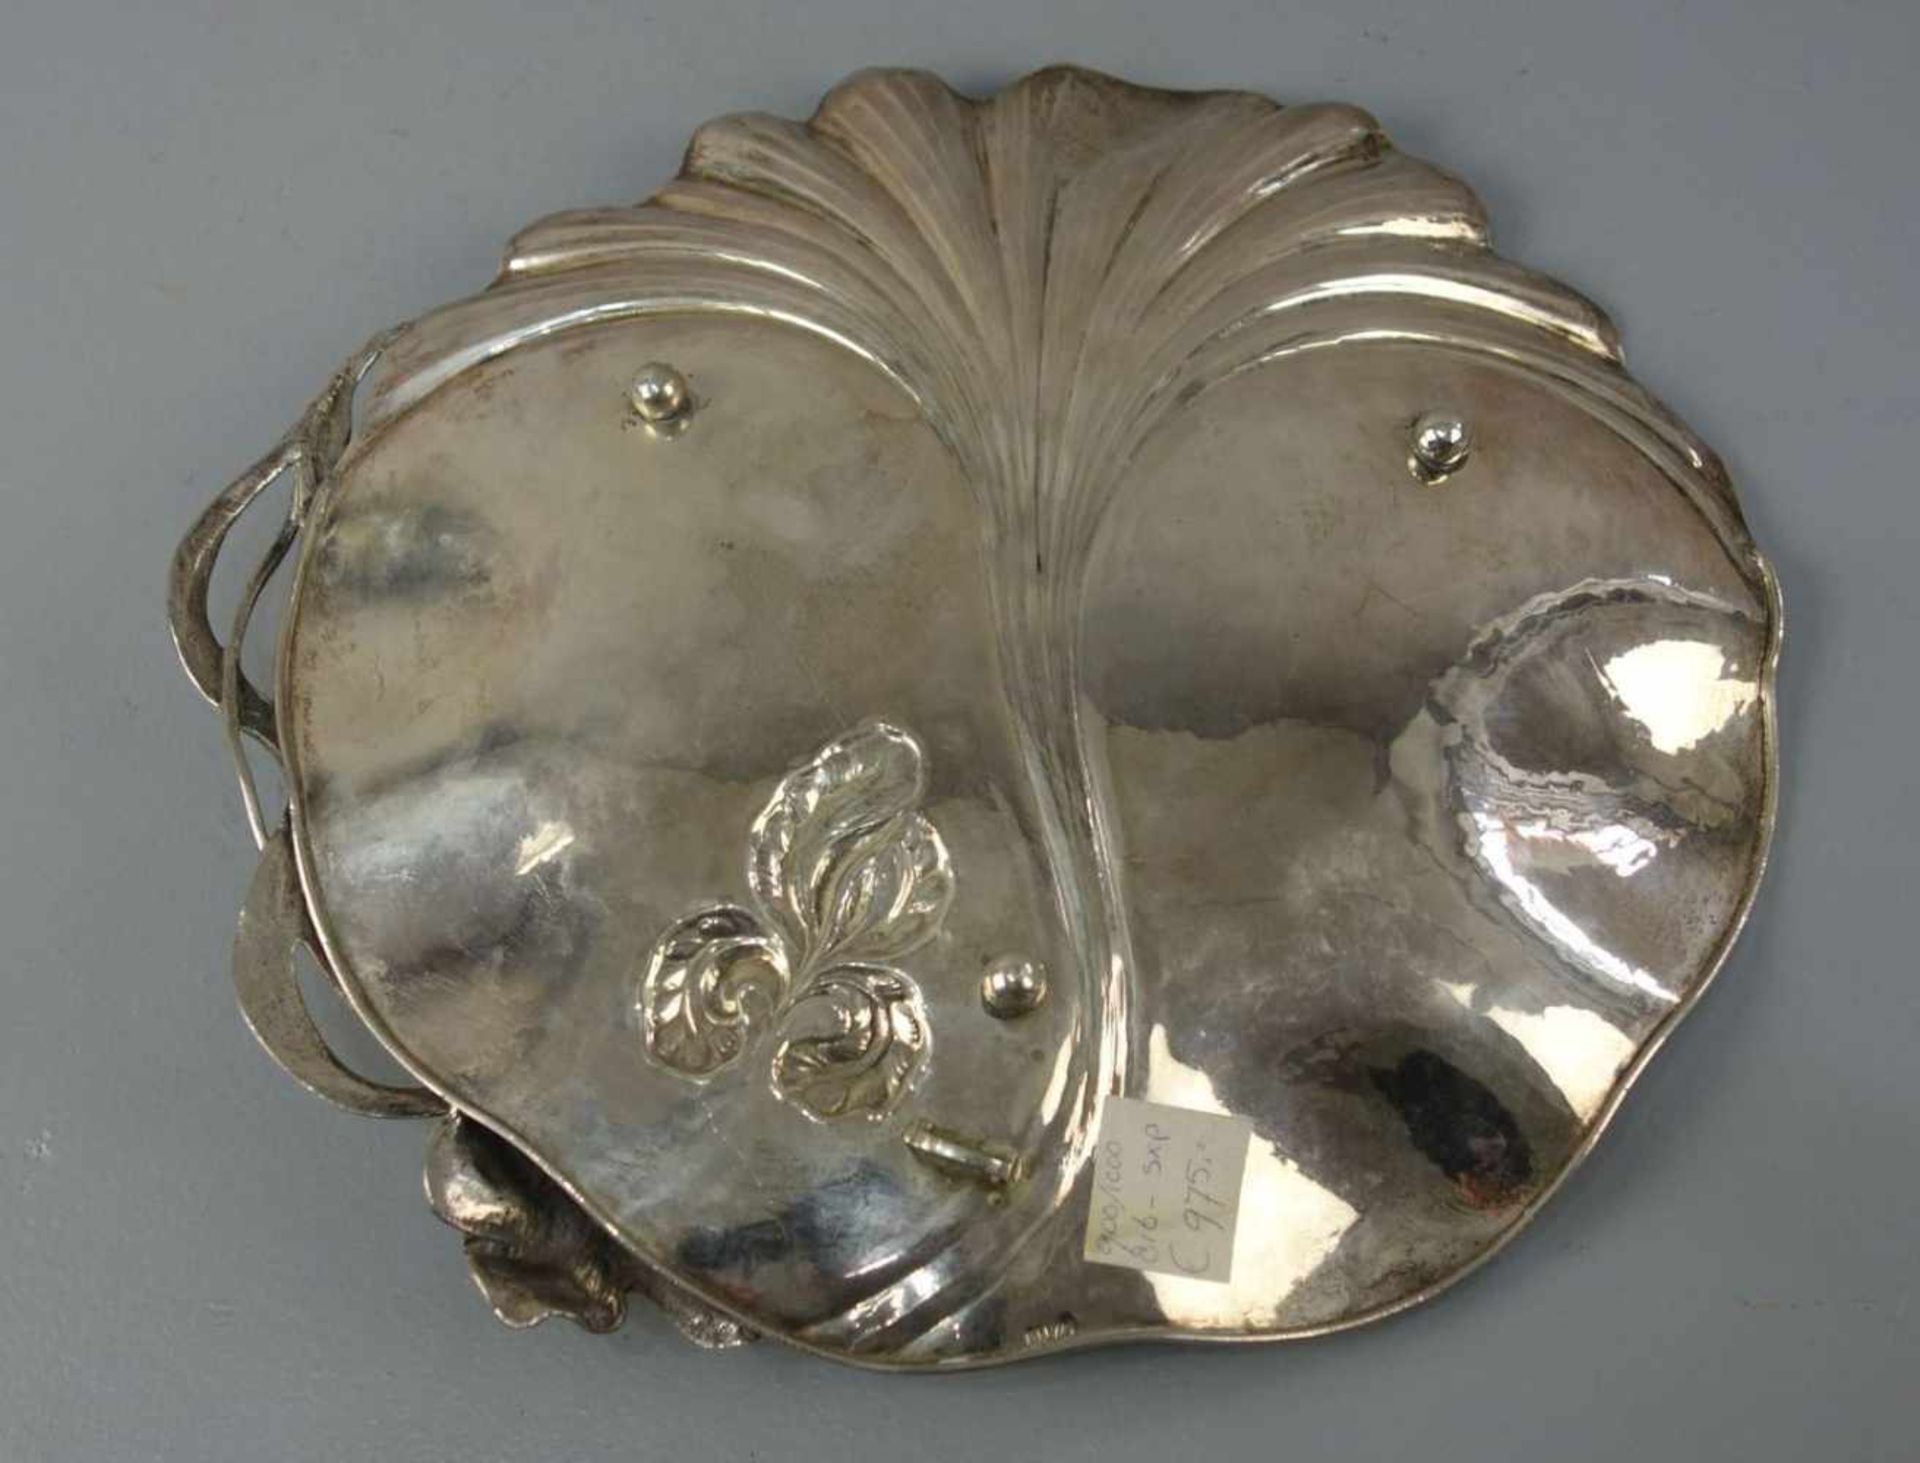 SILBERNE SCHALE MIT FLORALDEKOR im Stil des Jugendstils / silver bowl with gingko and flag lily - Image 3 of 3